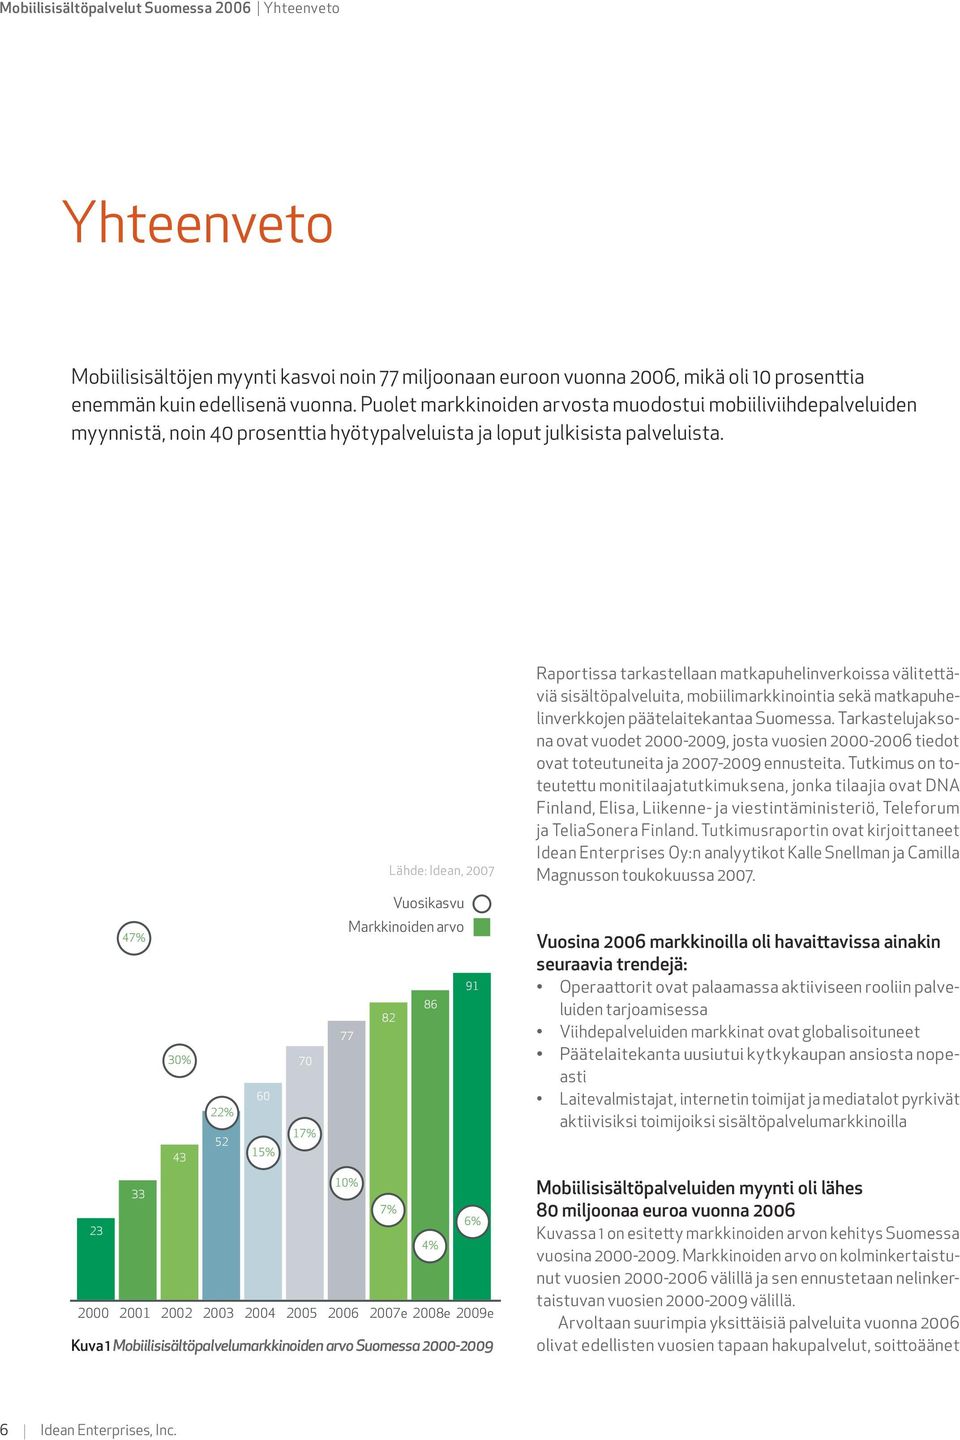 Kuva 1 Mobiilisisältöpalvelumarkkinoiden arvo Suomessa 2000-2009 Raportissa tarkastellaan matkapuhelinverkoissa välitettäviä sisältöpalveluita, mobiilimarkkinointia sekä matkapuhelinverkkojen